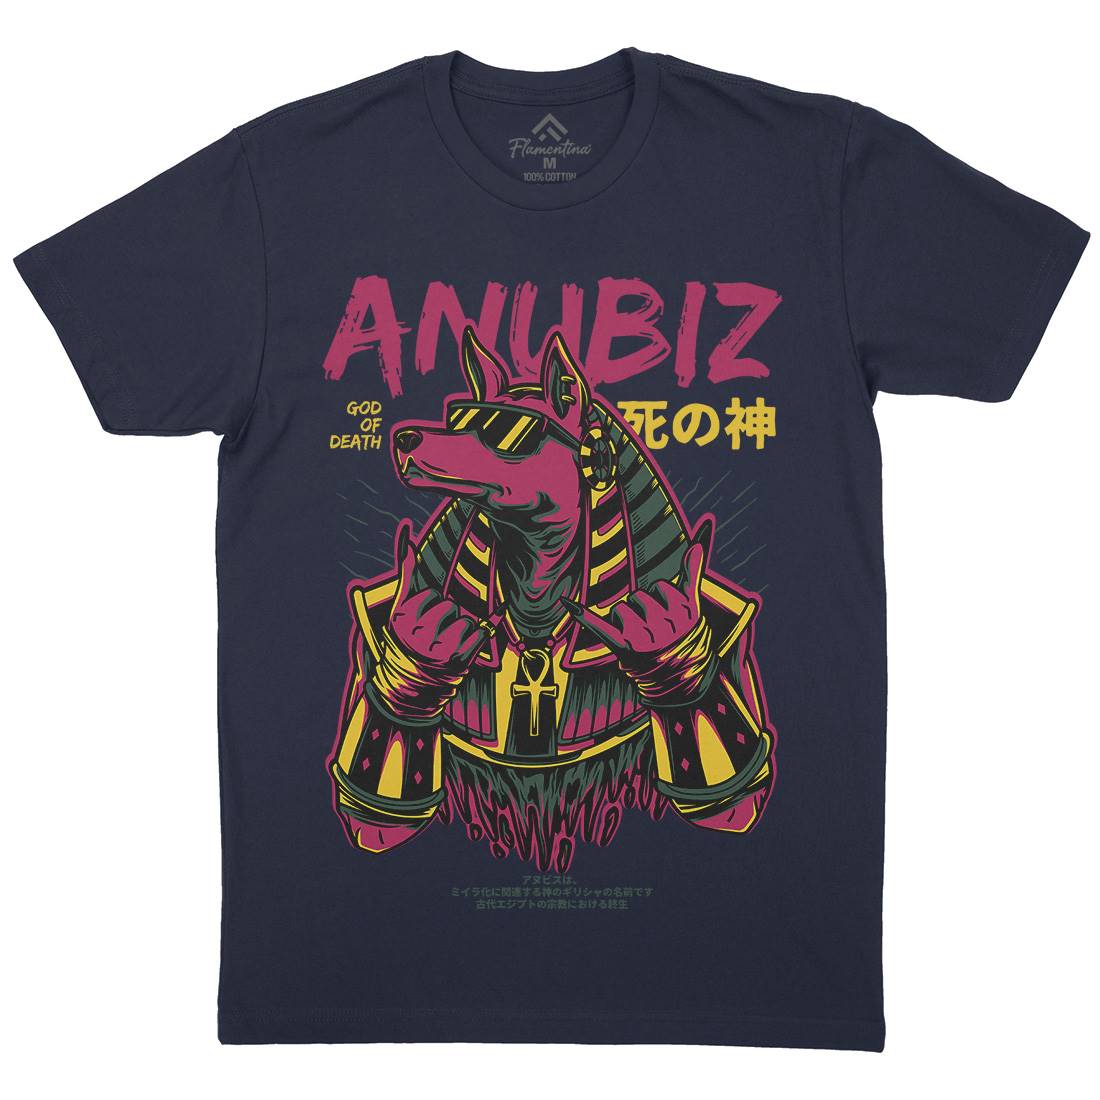 Anubis Hipster Mens Organic Crew Neck T-Shirt Warriors D707